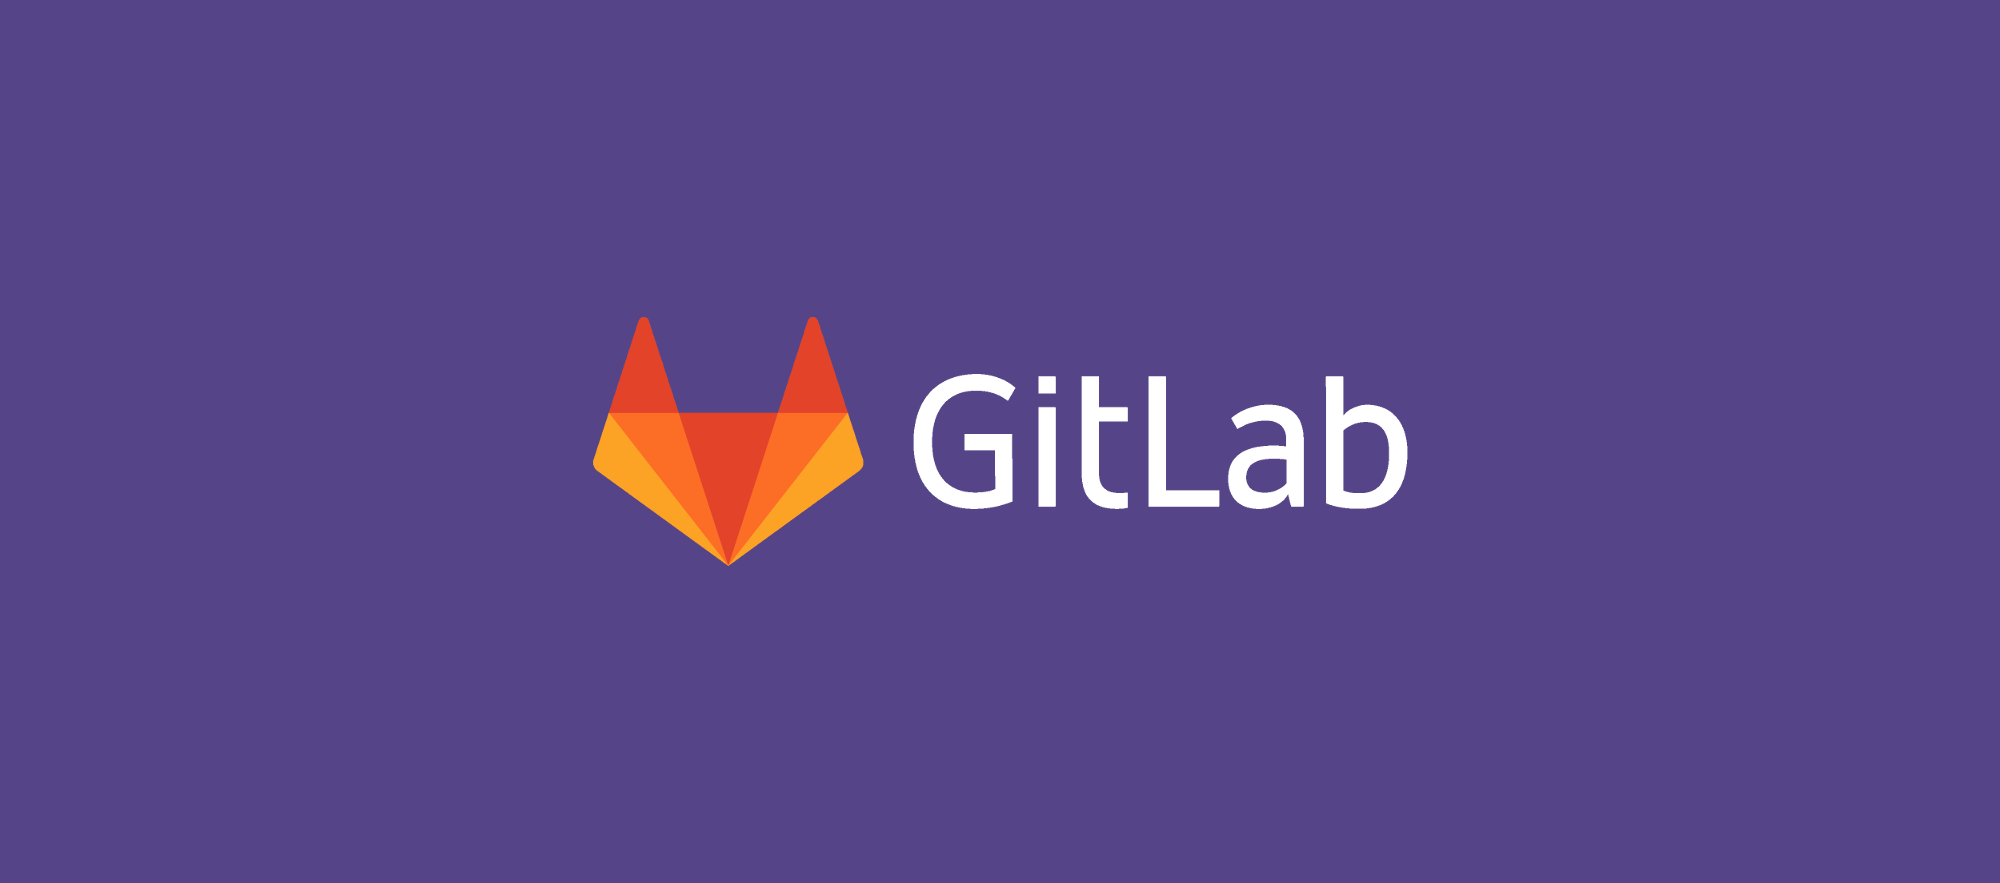 Gitlab hosting. GITLAB картинка. GITLAB avatar. GITLAB logo прозрачный. GITLAB лого украинское.